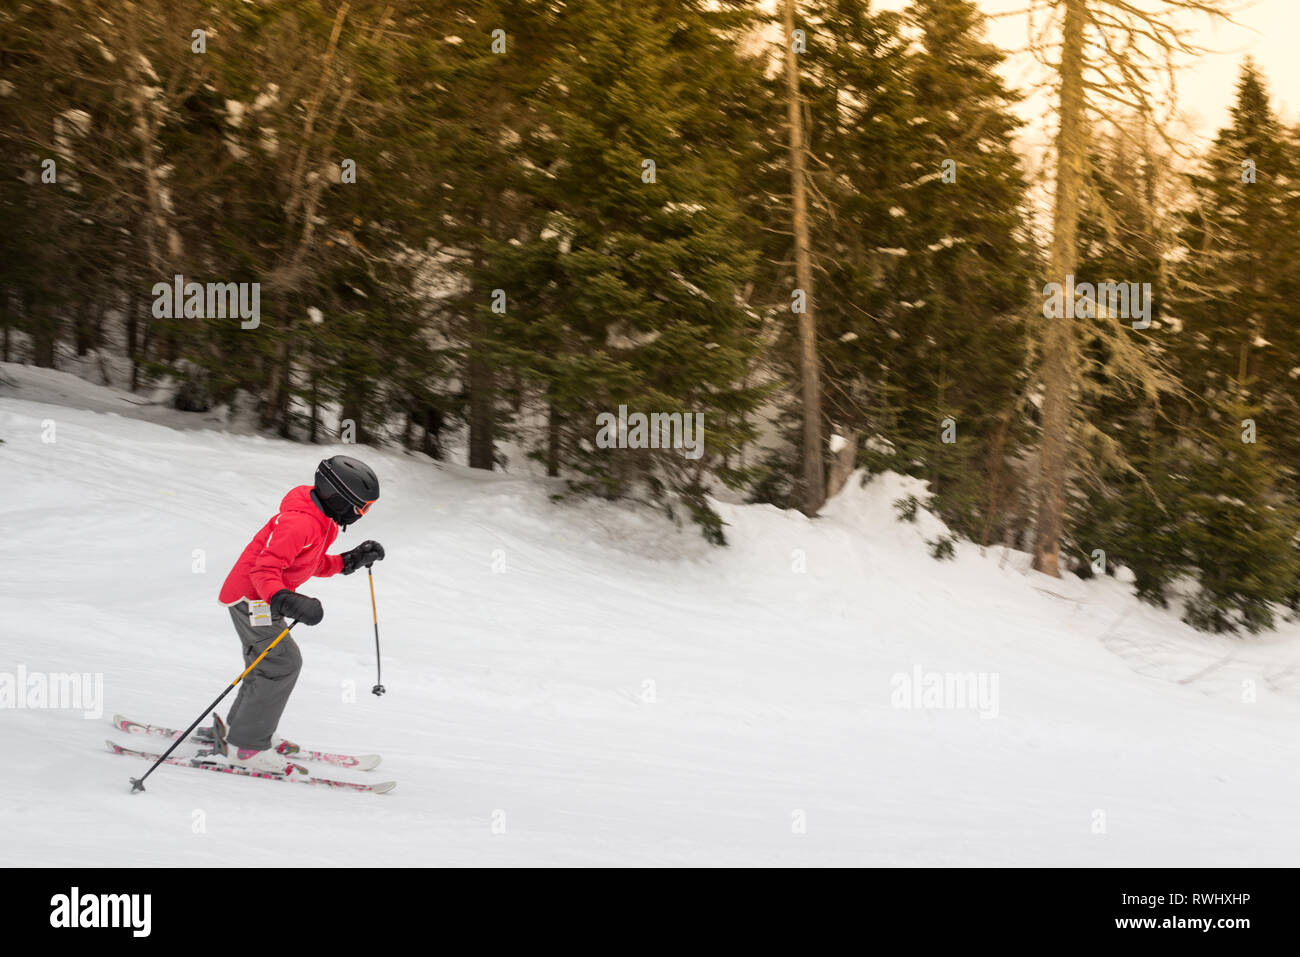 Un niño llevaba esquís engranaje de los deportes de invierno a bajar por una montaña Foto de stock